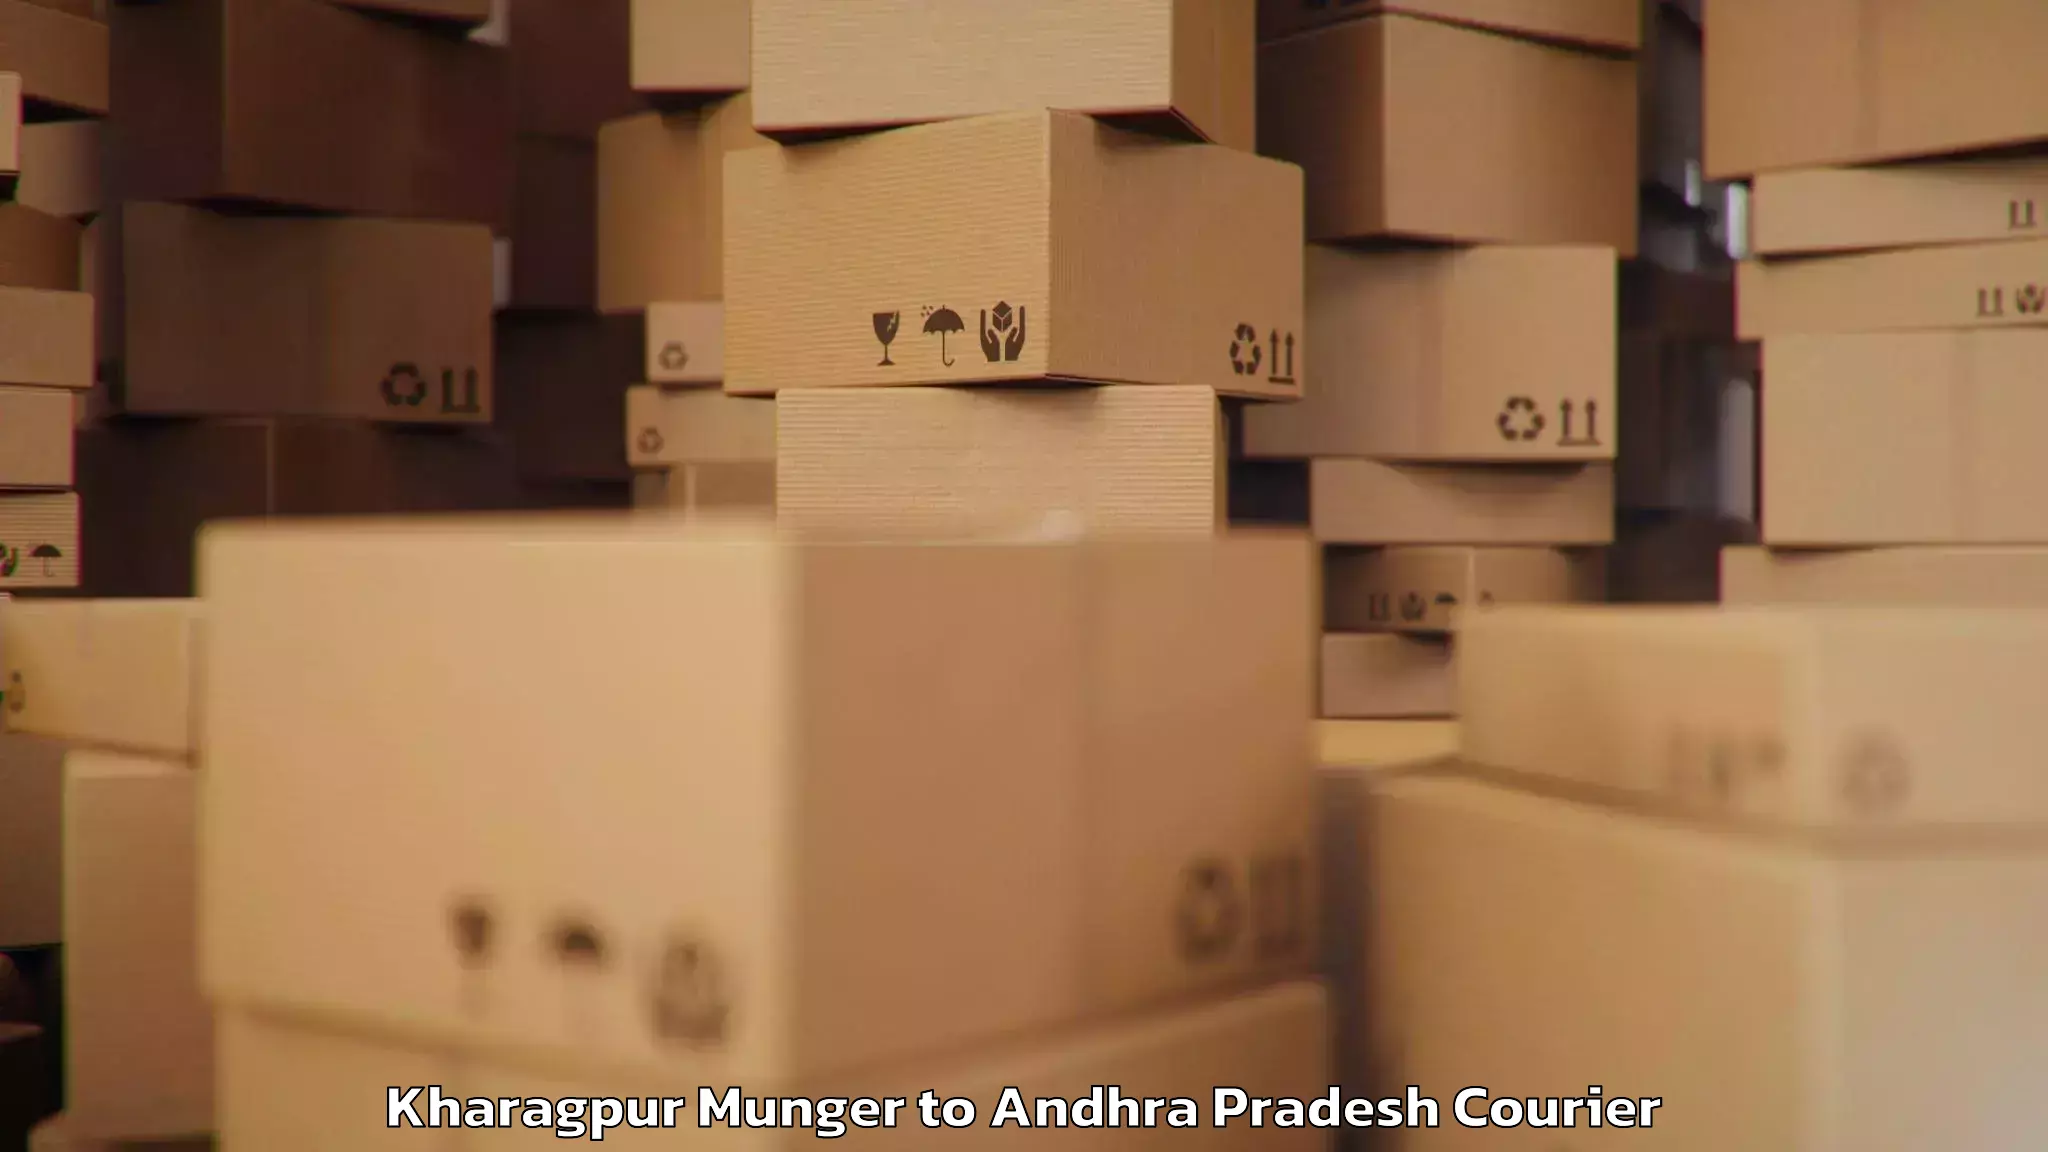 Baggage shipping rates calculator Kharagpur Munger to Kambadur